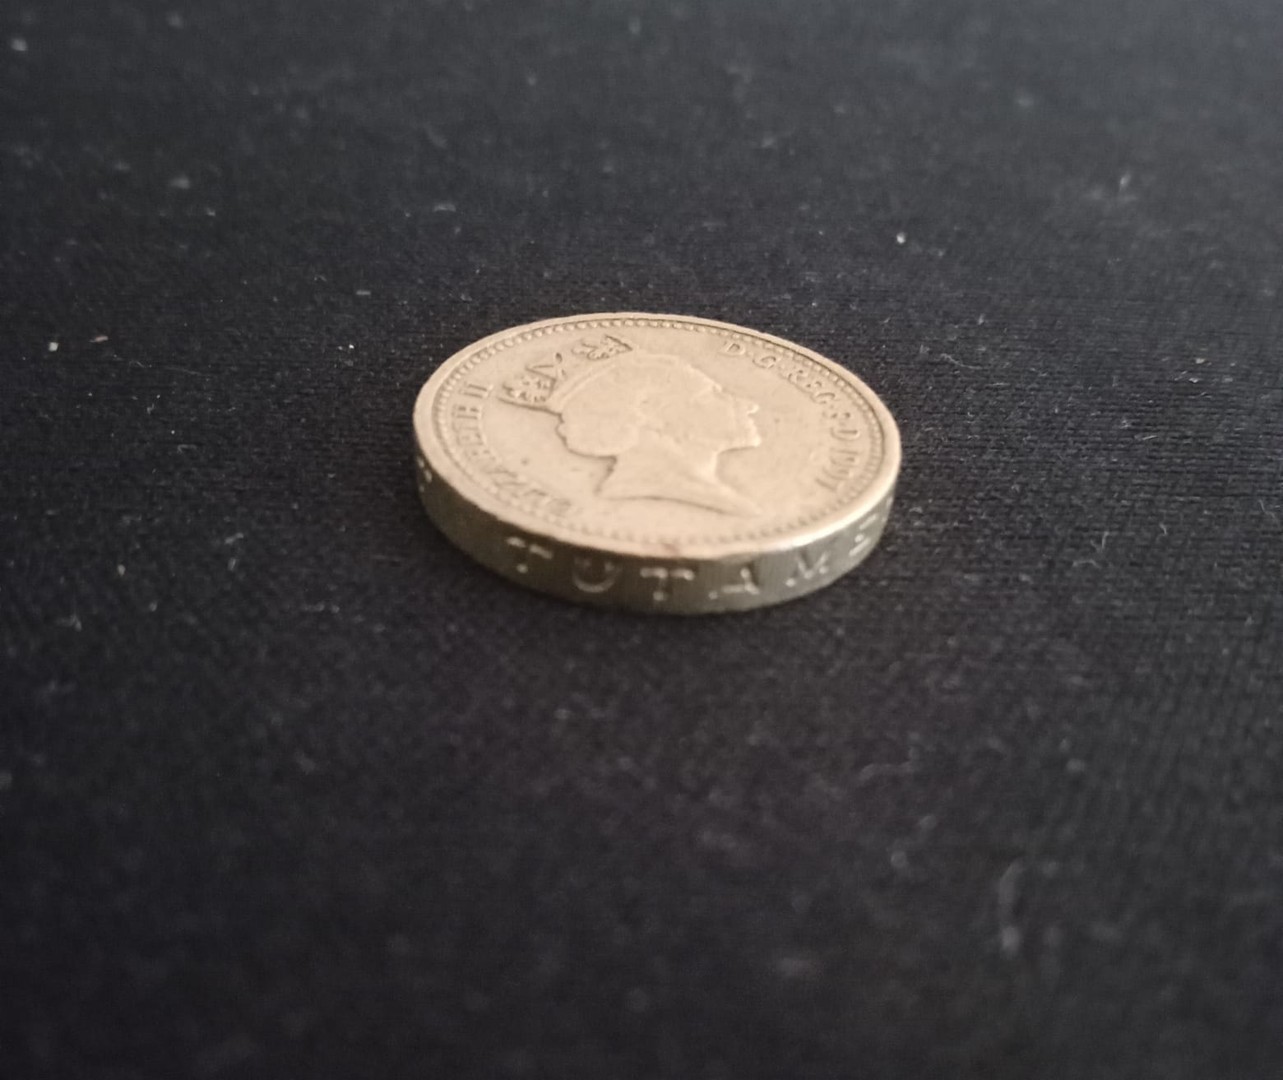 arte y antigüedades - Moneda rara de 1 libra Queen Elizabeth II, DECUS ET TUTAMEN 1997.  One Pound.  1